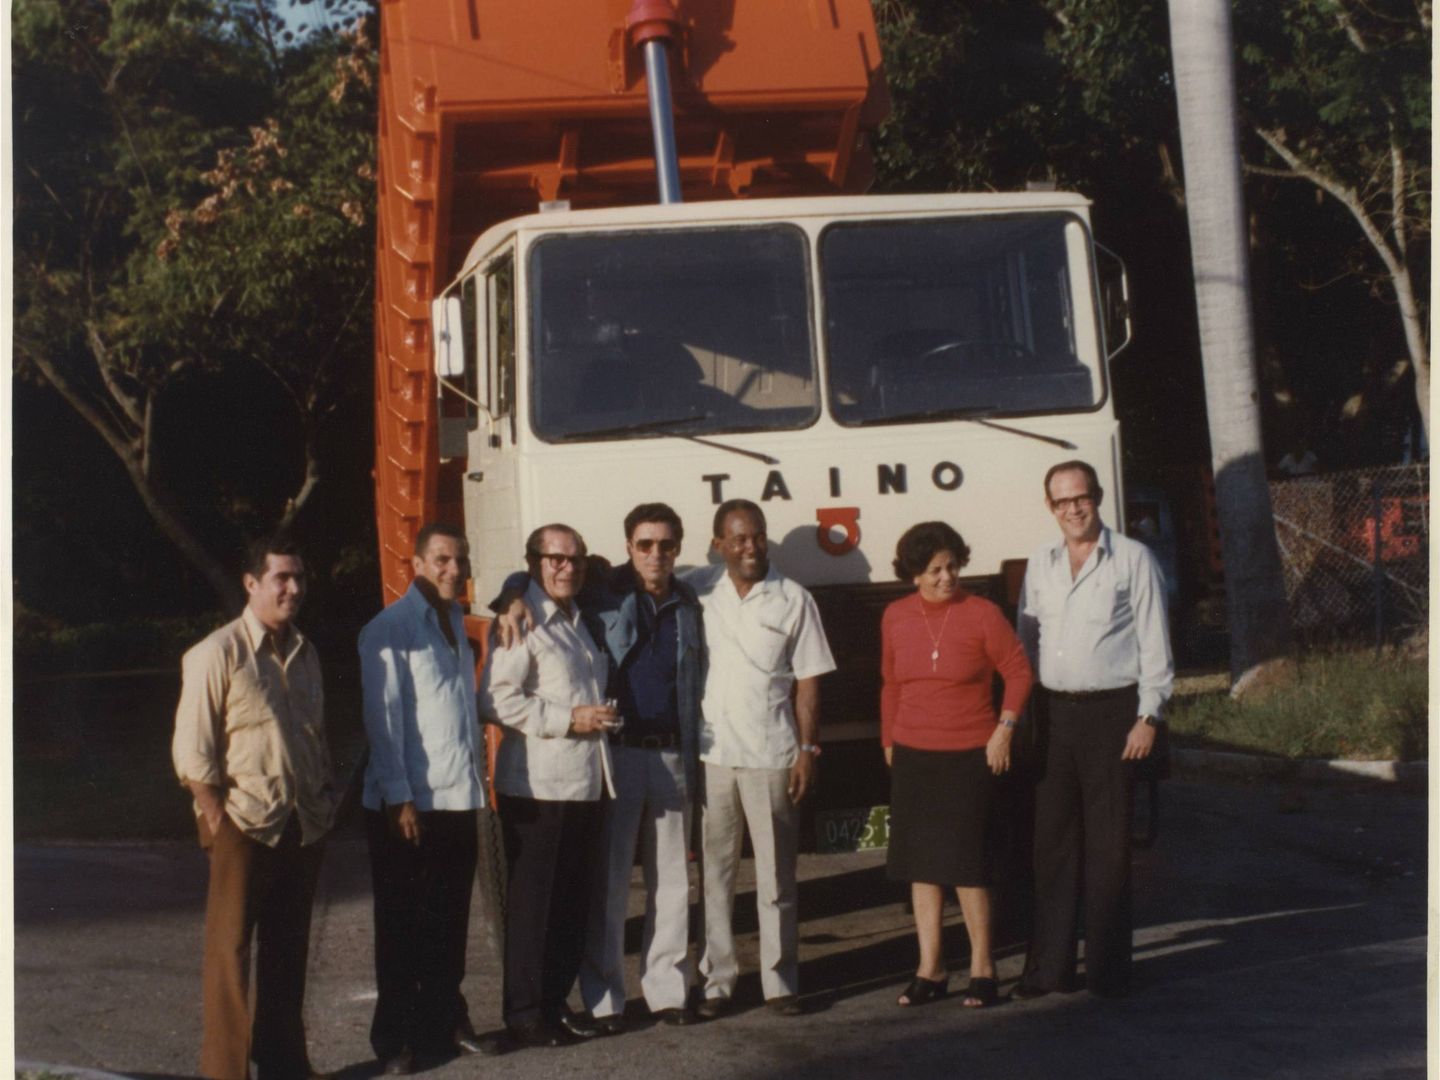 Eduardo Barreiros y colaboradores delante de un camión Taino. (Fundación Eduardo Barreiros)